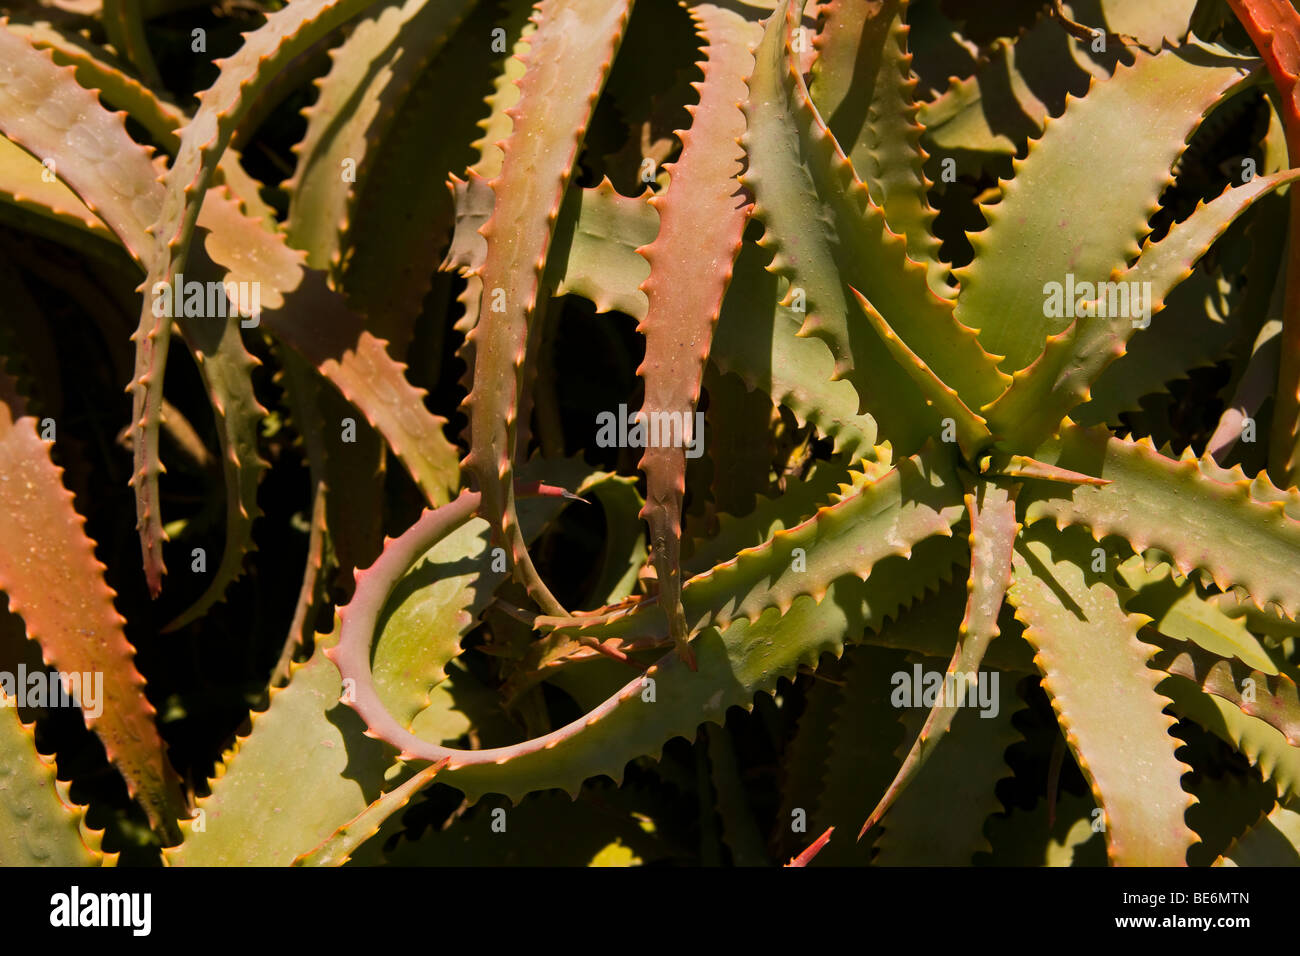 CA, USA - Red Hot Poker cactus plant on Santa Catalina Island Stock Photo